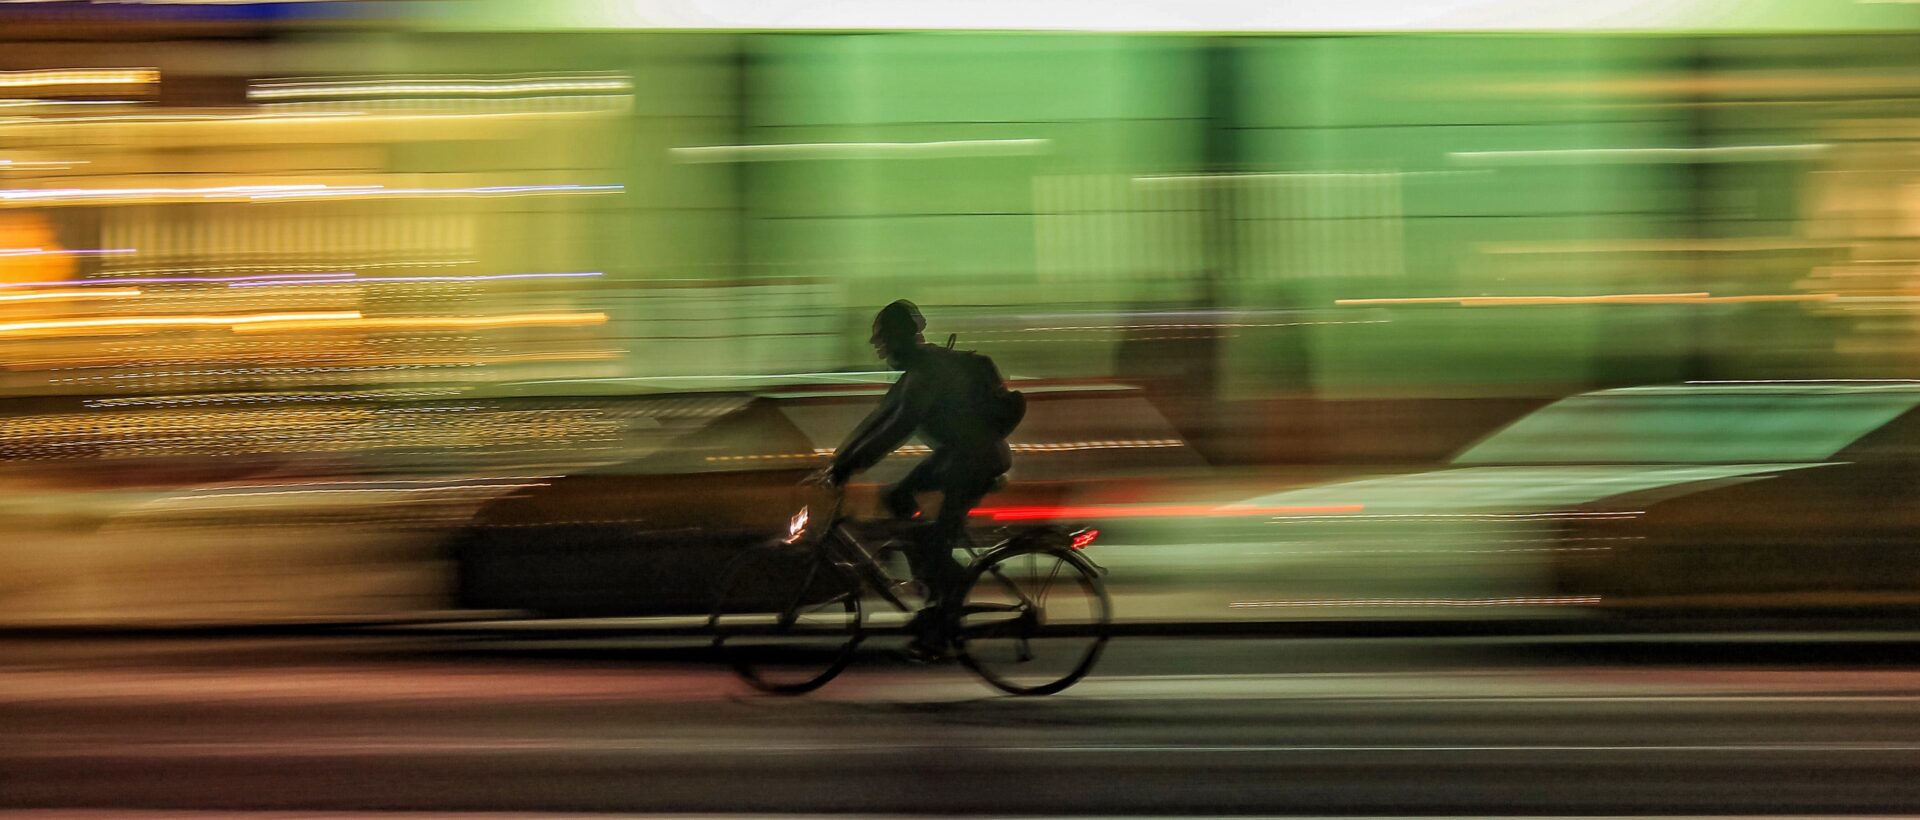 Fahrradfahrer im Timelaps sinnbildlich für Pagespeed von Websites